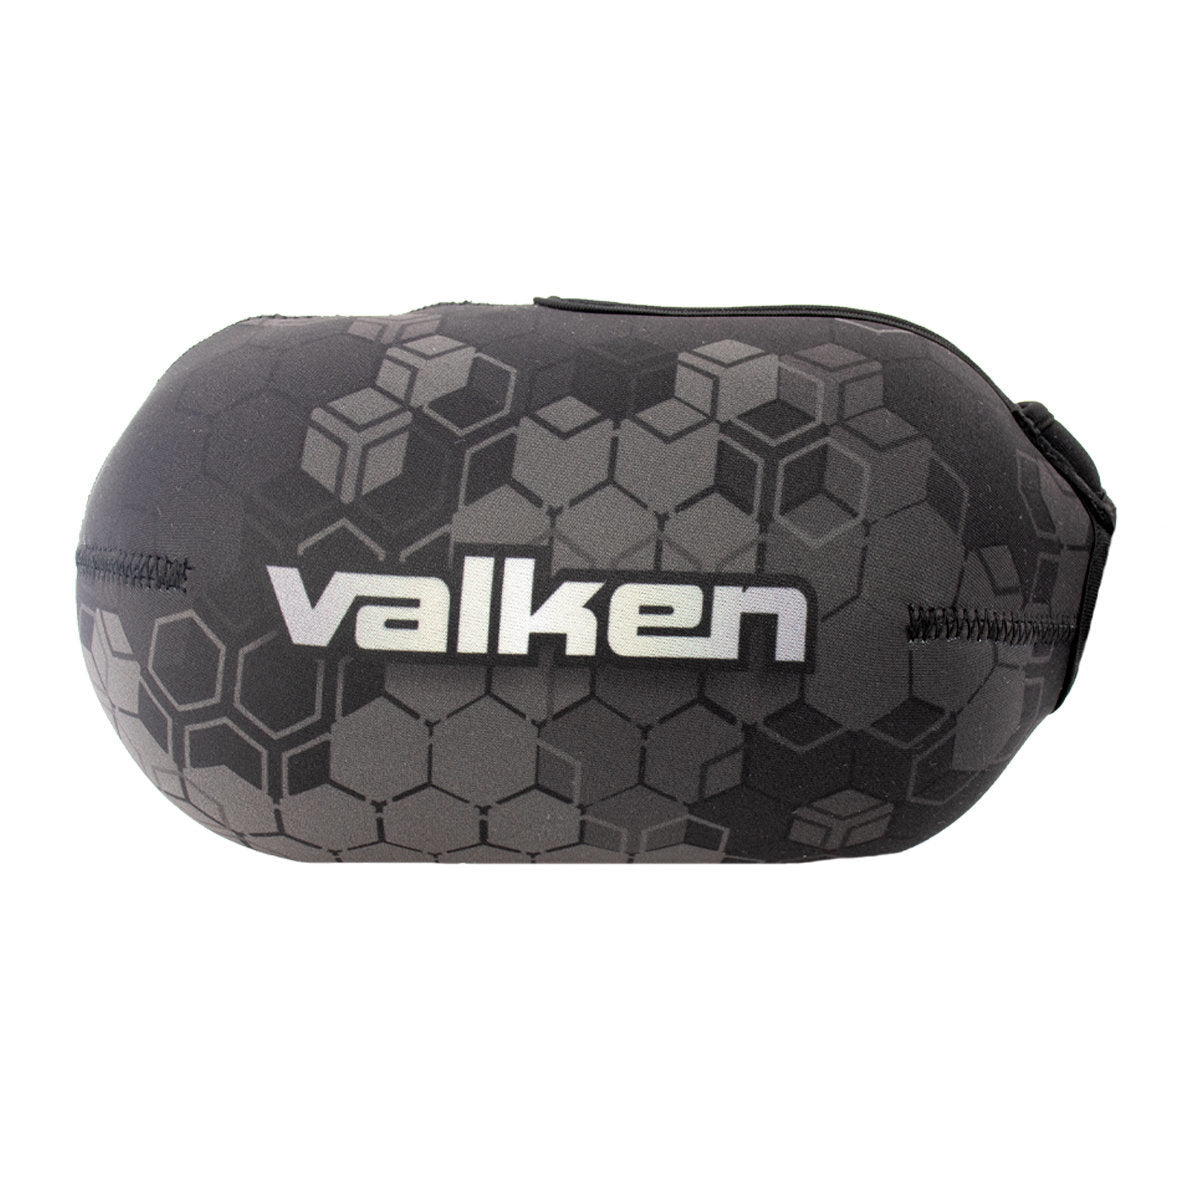 Valken Fate Gfx Tank Cover - 3D Cube Grey Camo